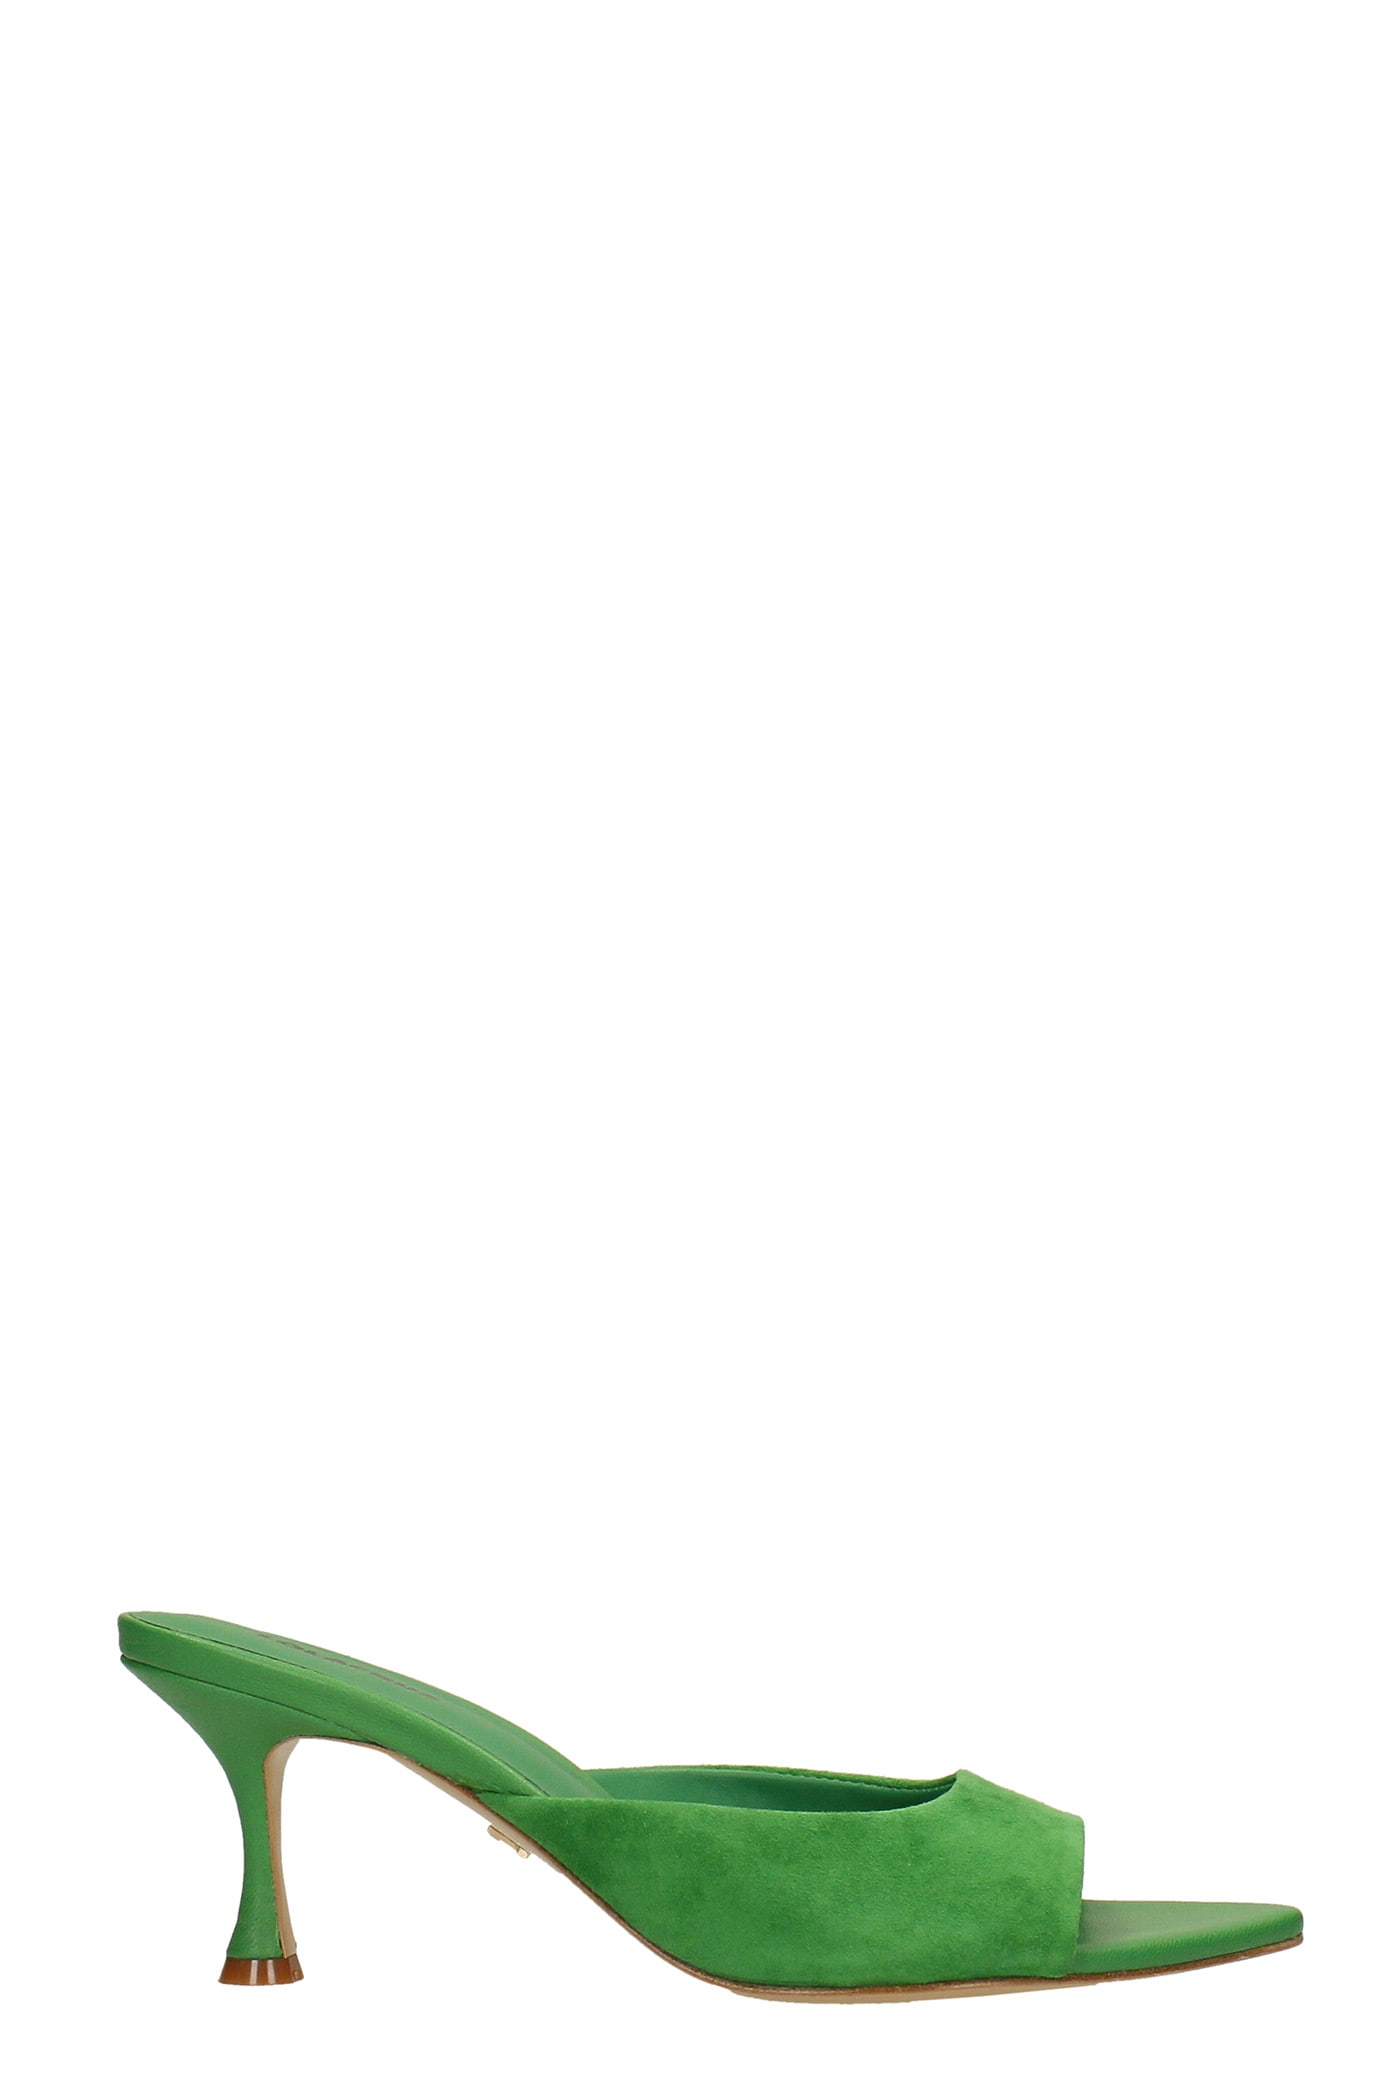 lola cruz slipper-mule in green suede